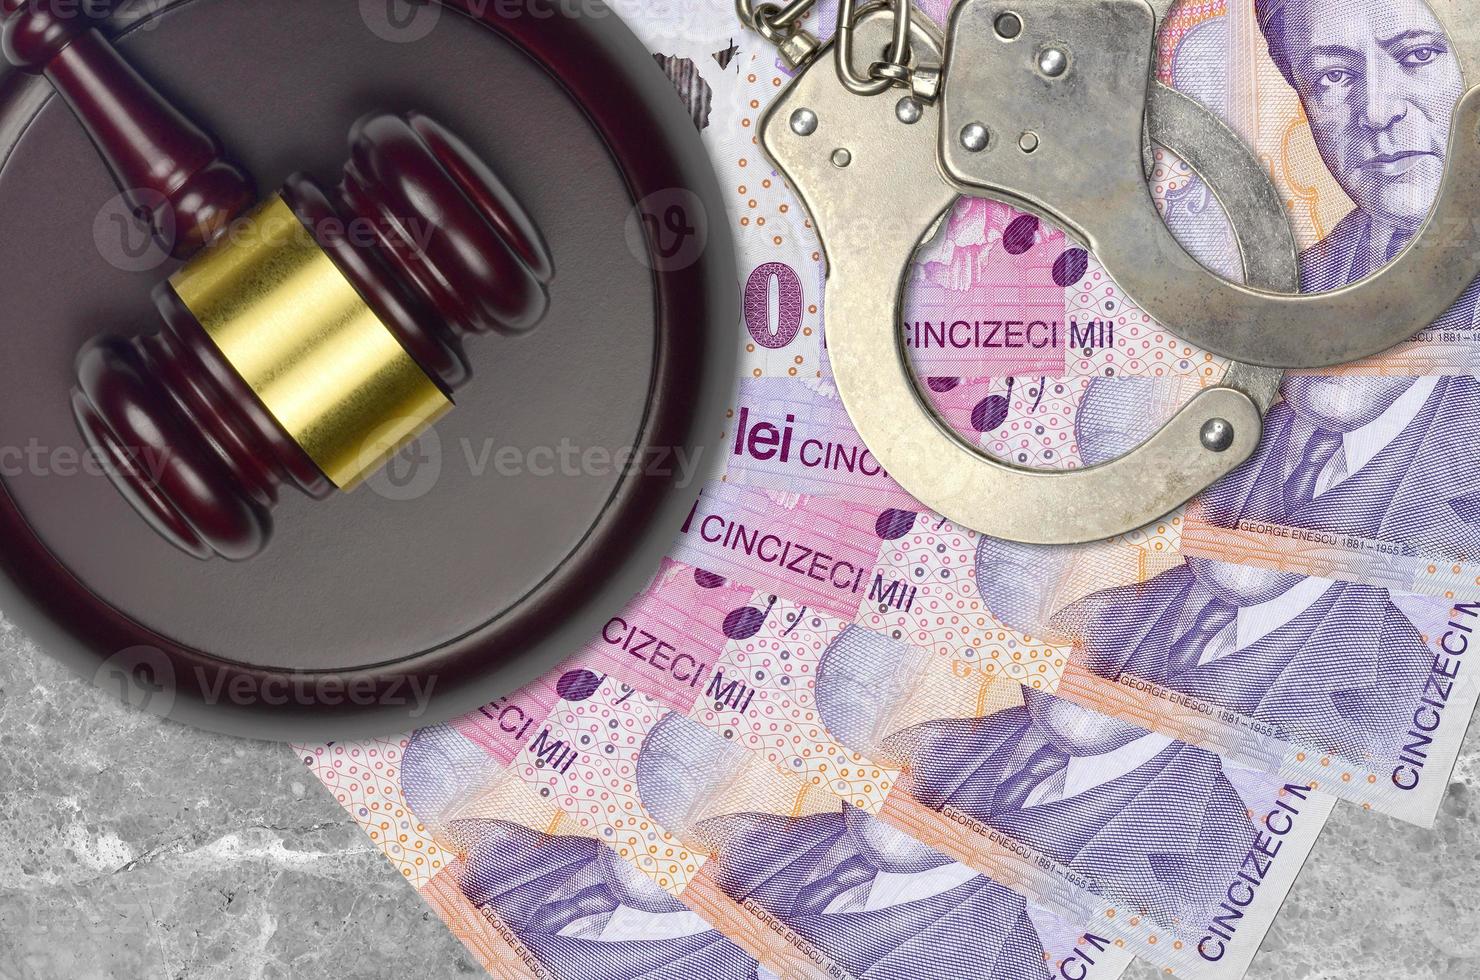 50000 Roemeense leu rekeningen en rechter hamer met Politie handboeien Aan rechtbank bureau. concept van gerechtelijk beproeving of omkoping. belasting vermijding foto